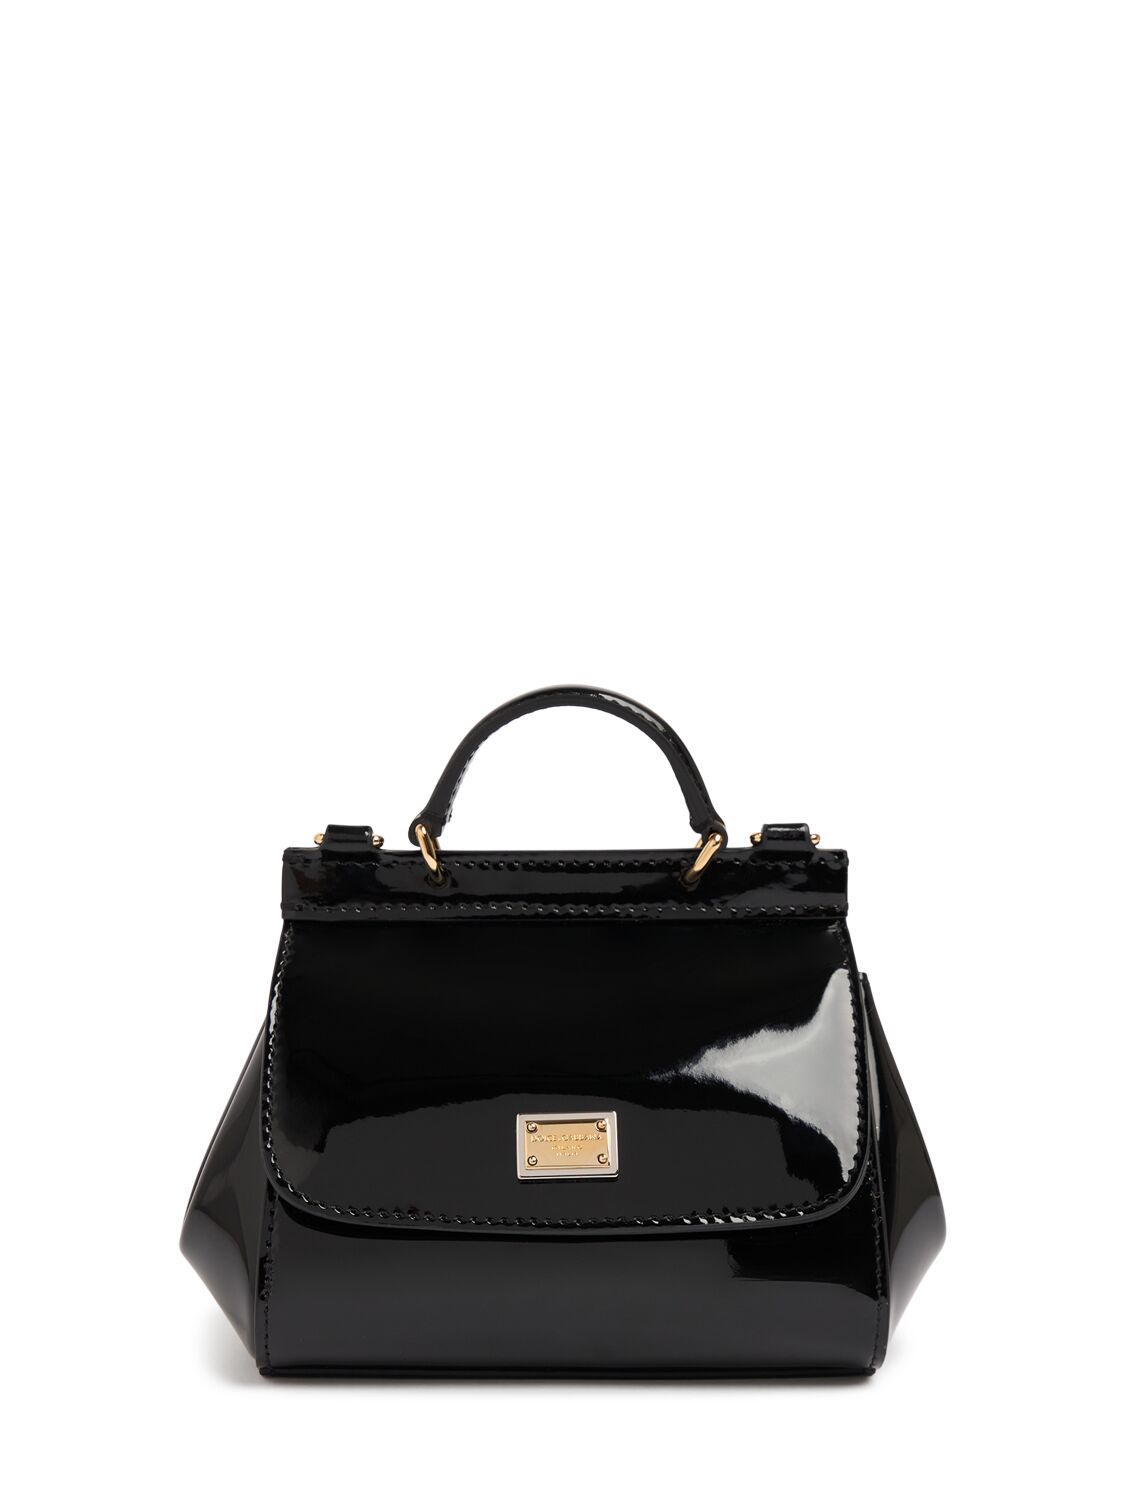 Dolce & Gabbana Sicily Patent Leather Shoulder Bag In Black